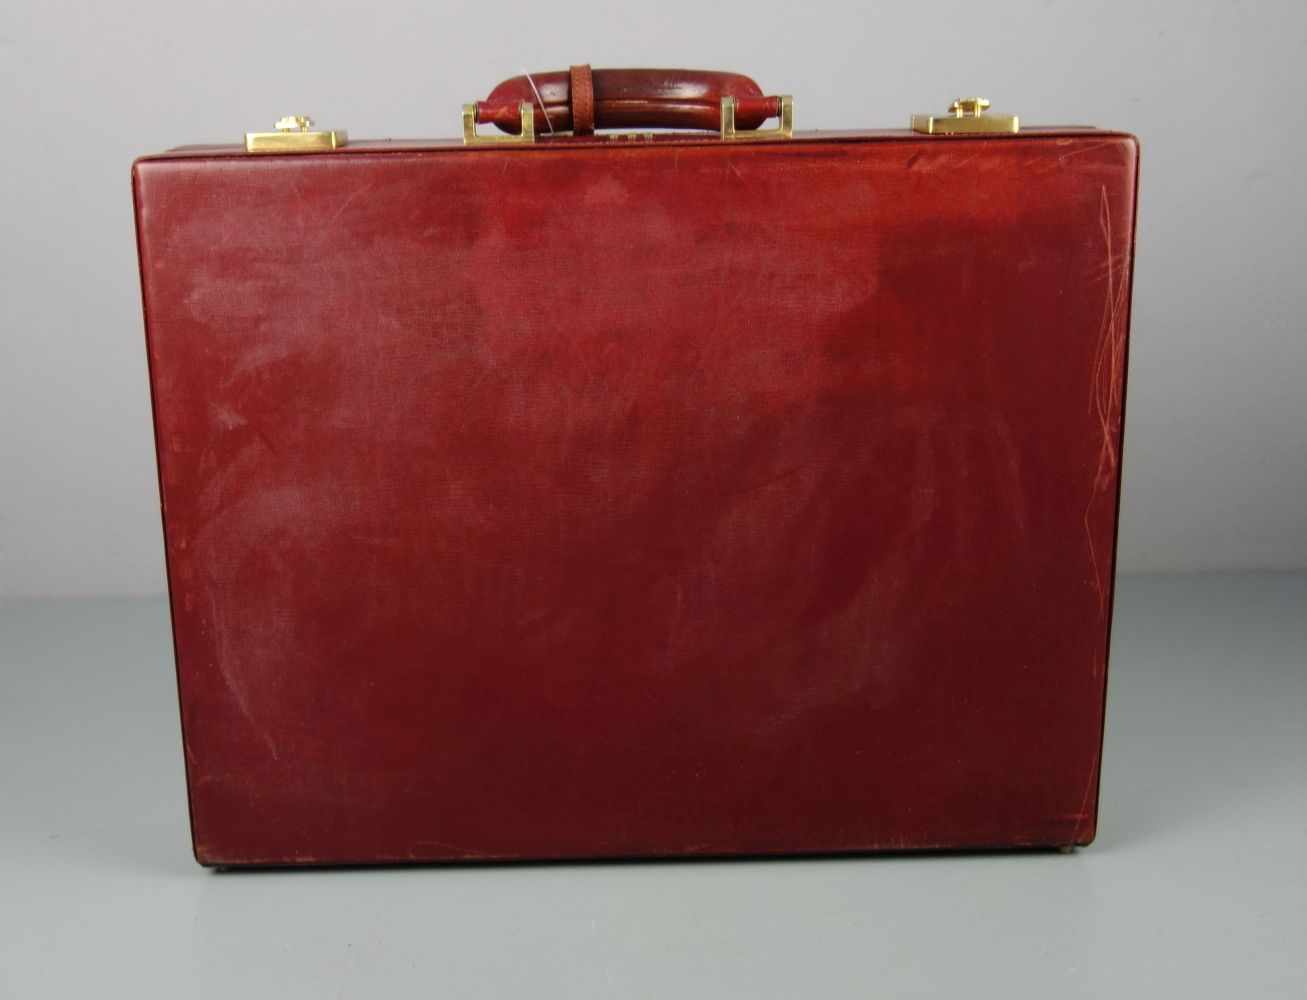 ROTER MÄDLER AKTENKOFFER / red leather briefcase, 2. H. 20. Jh., rotes Leder mit goldfarbenen - Image 6 of 6